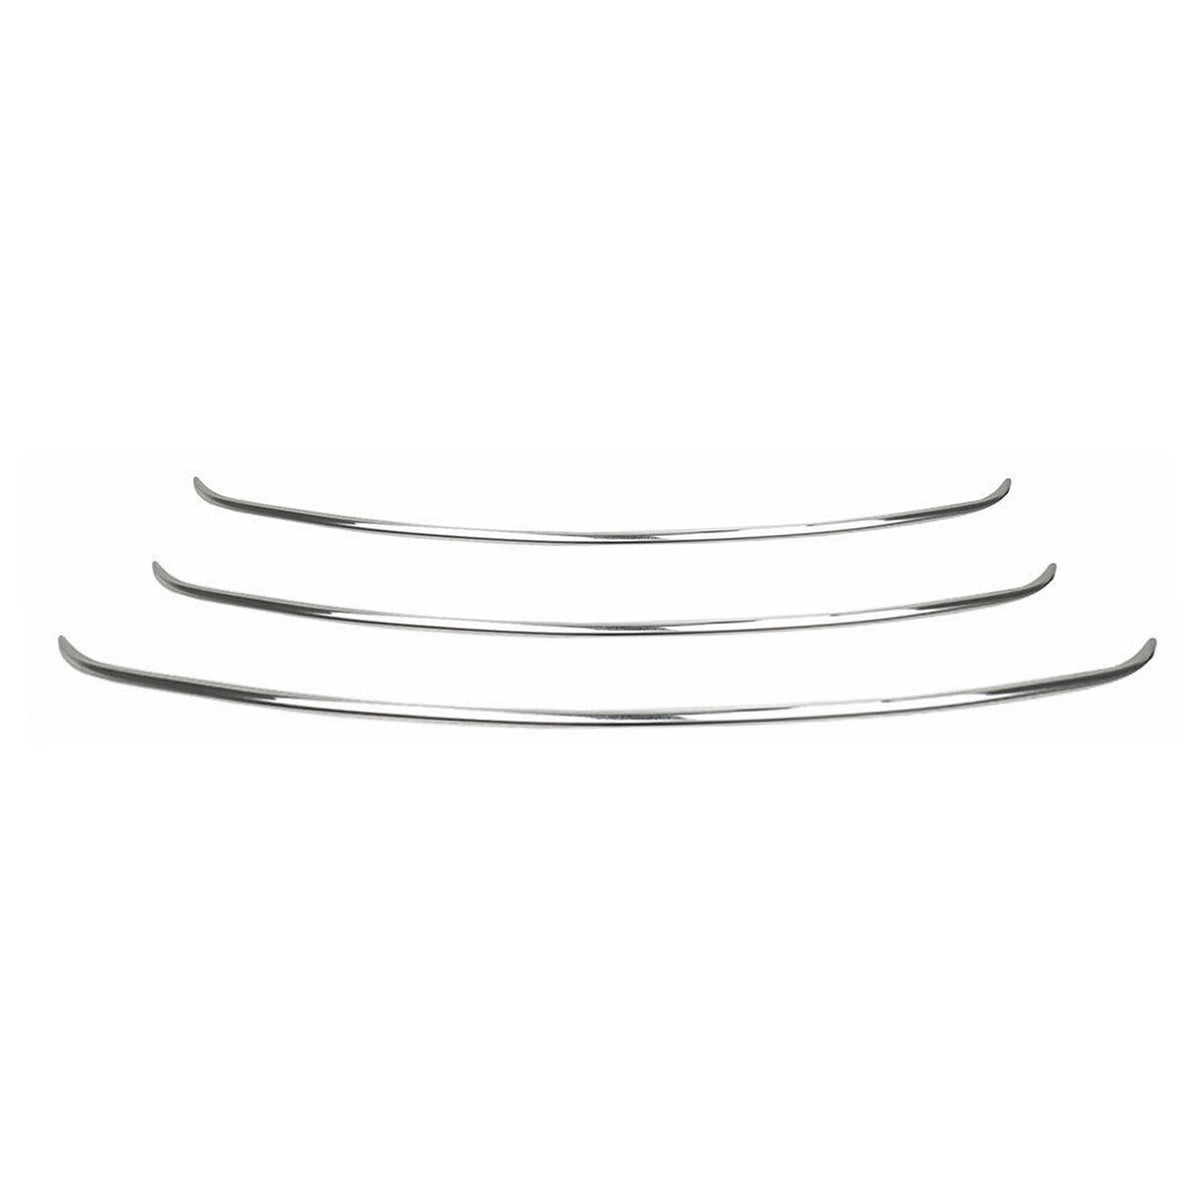 Kühlergrill Leisten Grillleisten für Hyundai ix35 2010-2015 Edelstahl Silber 3x